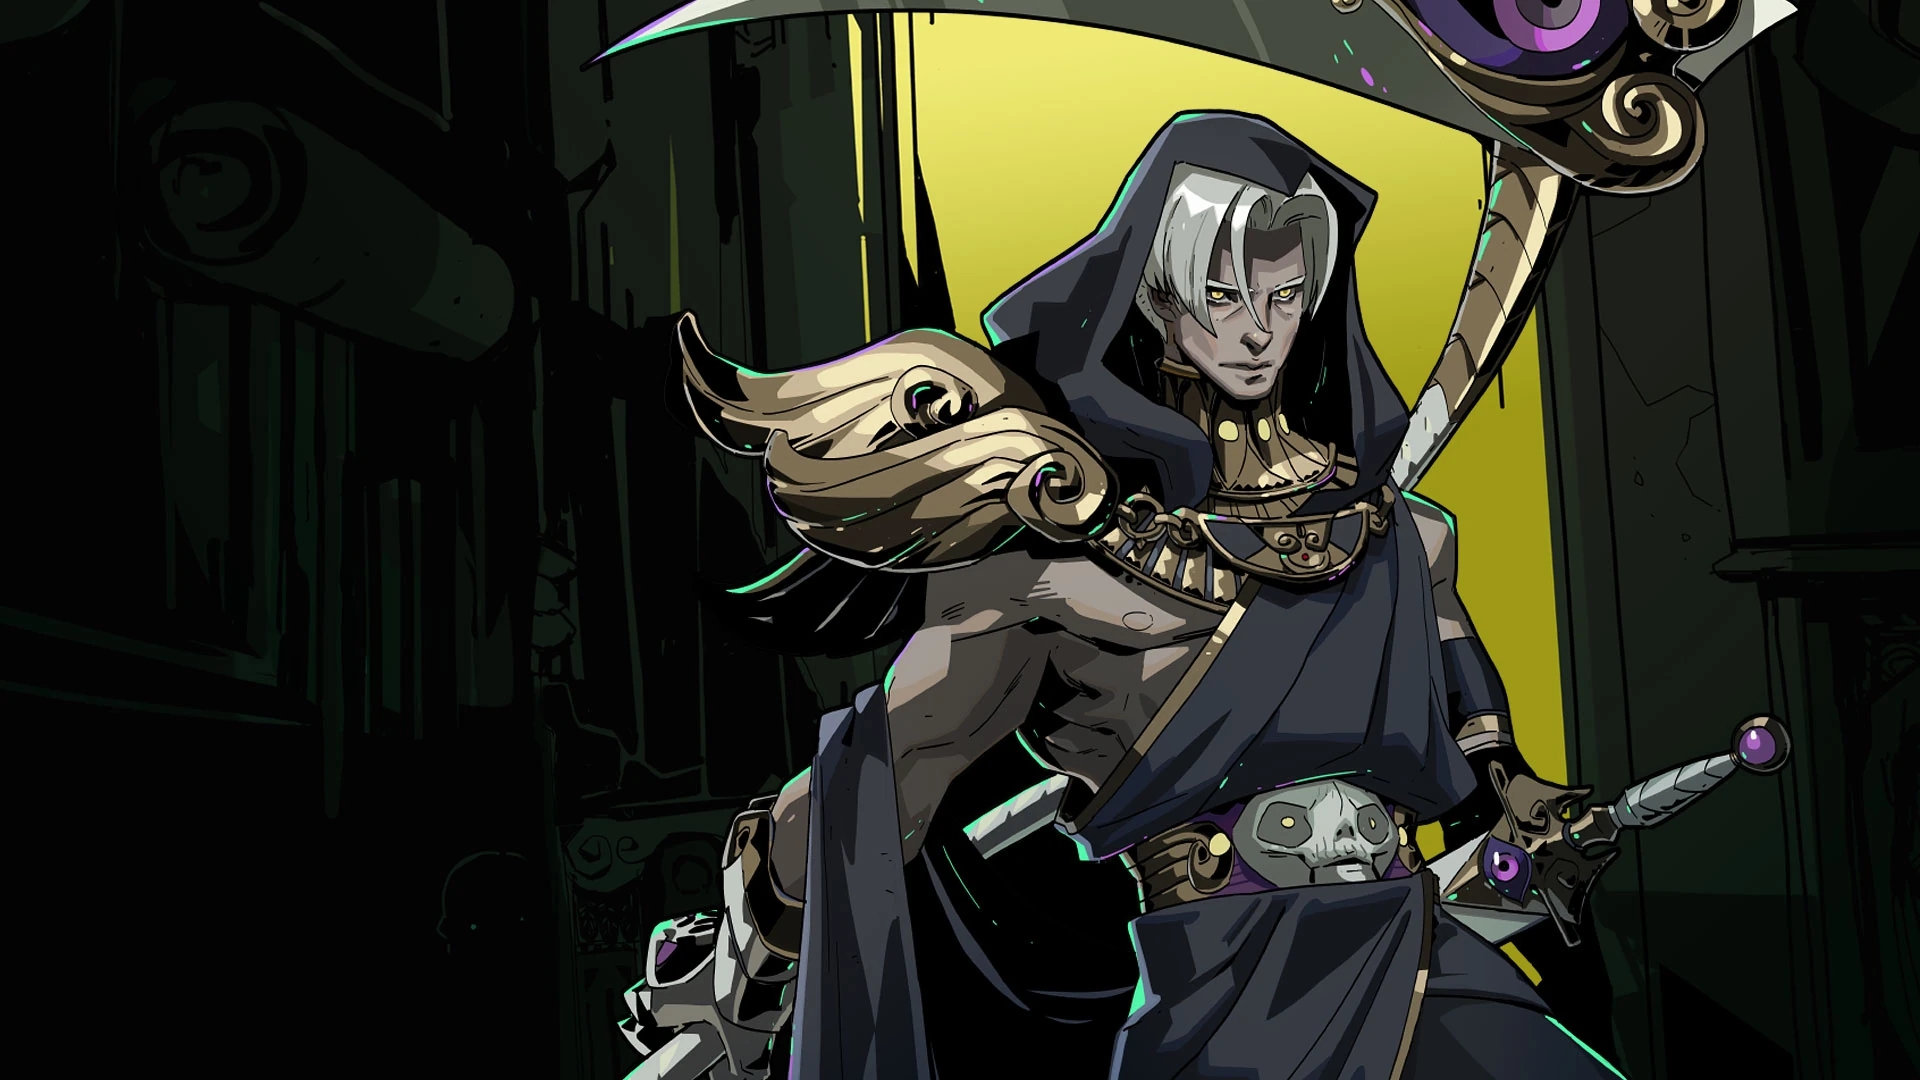 Thanatos with his scythe